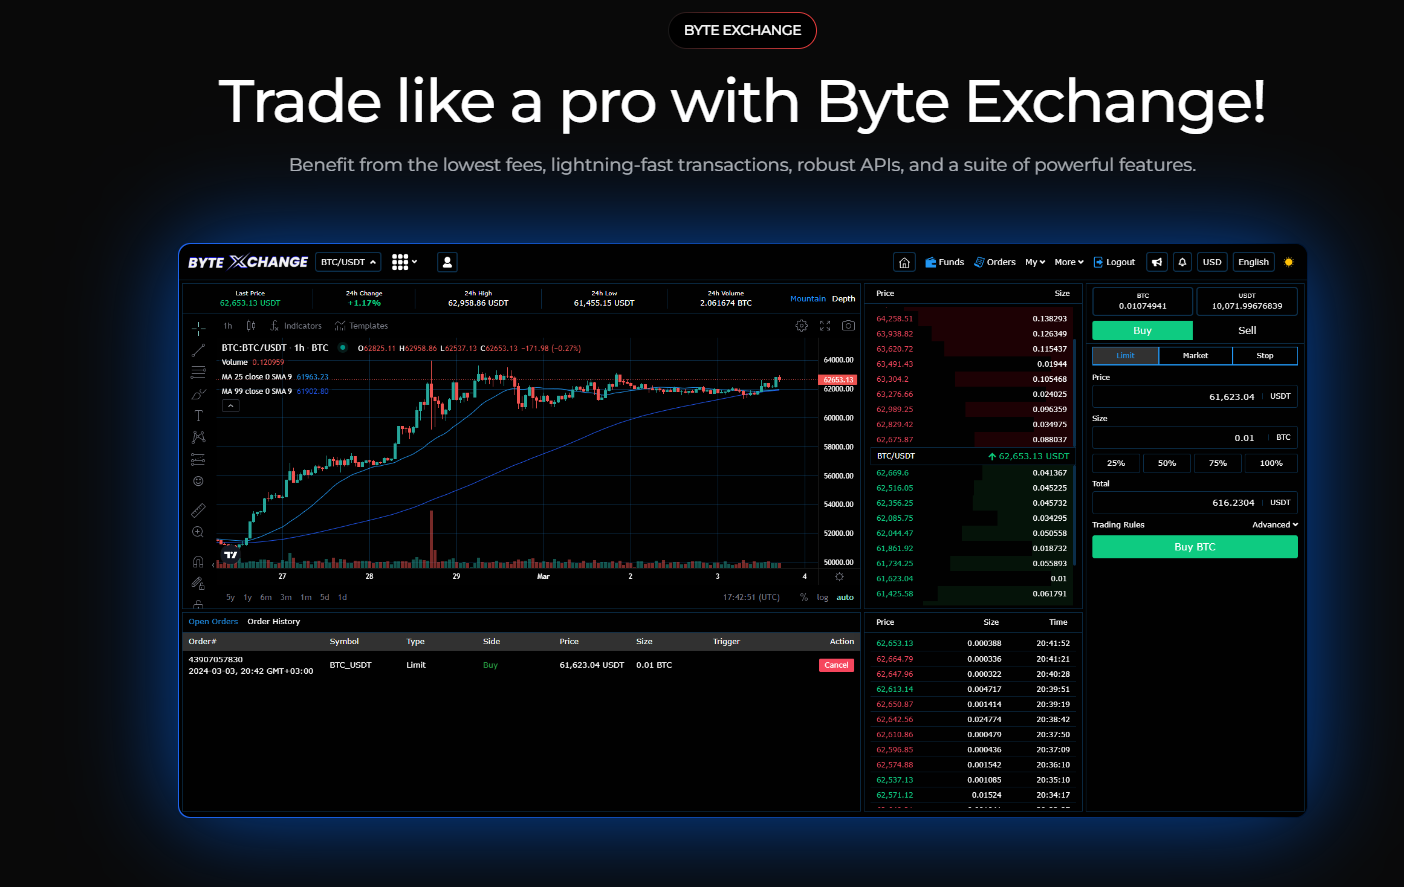 Byte Exchange’s new website